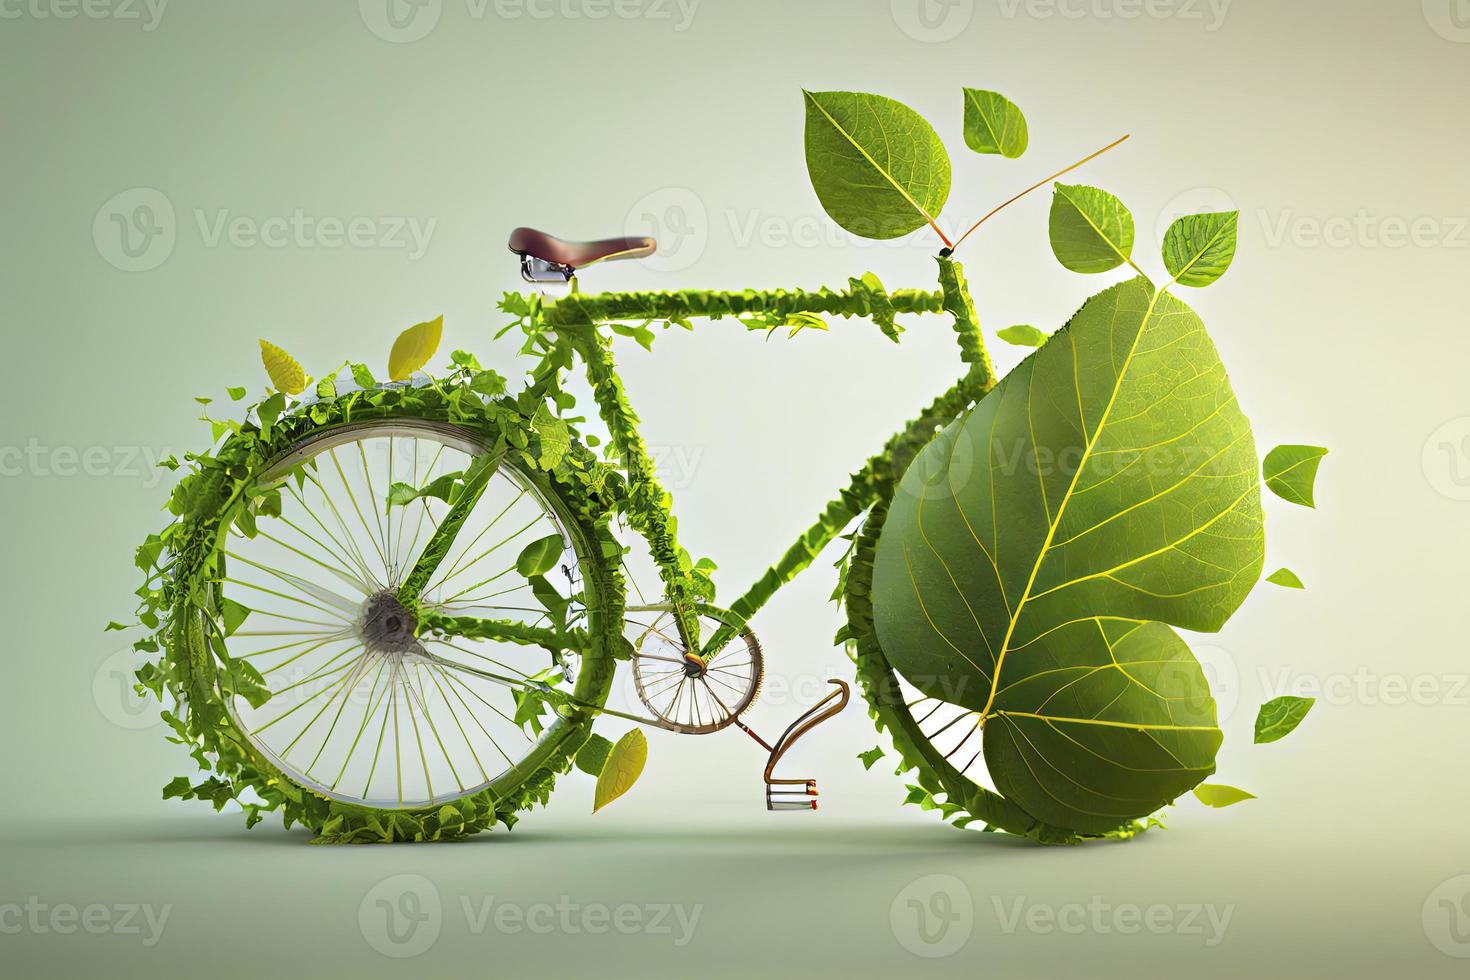 fiets gedekt met groen blad rank, eco en milieu concept, duurzame vervoer en reizen foto